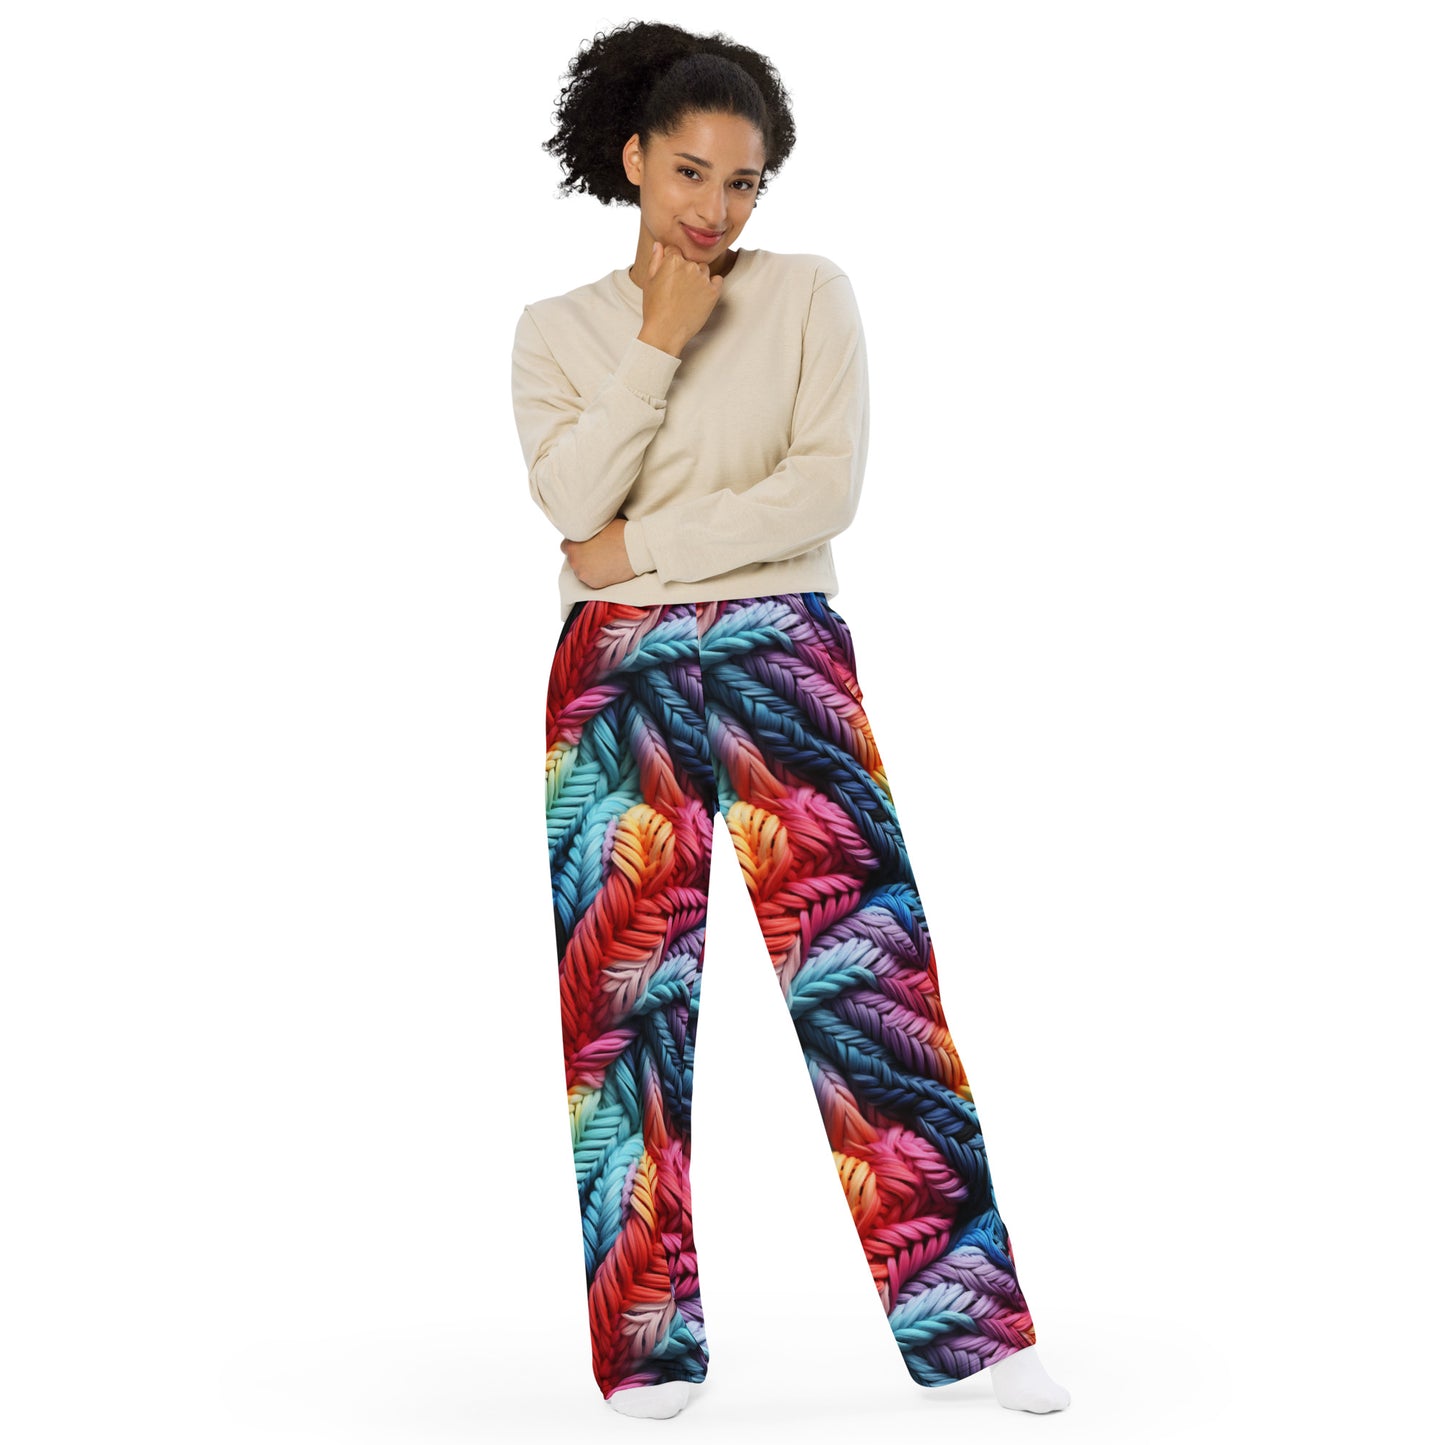 Colorful Lace Potpourri unisex wide-leg pants